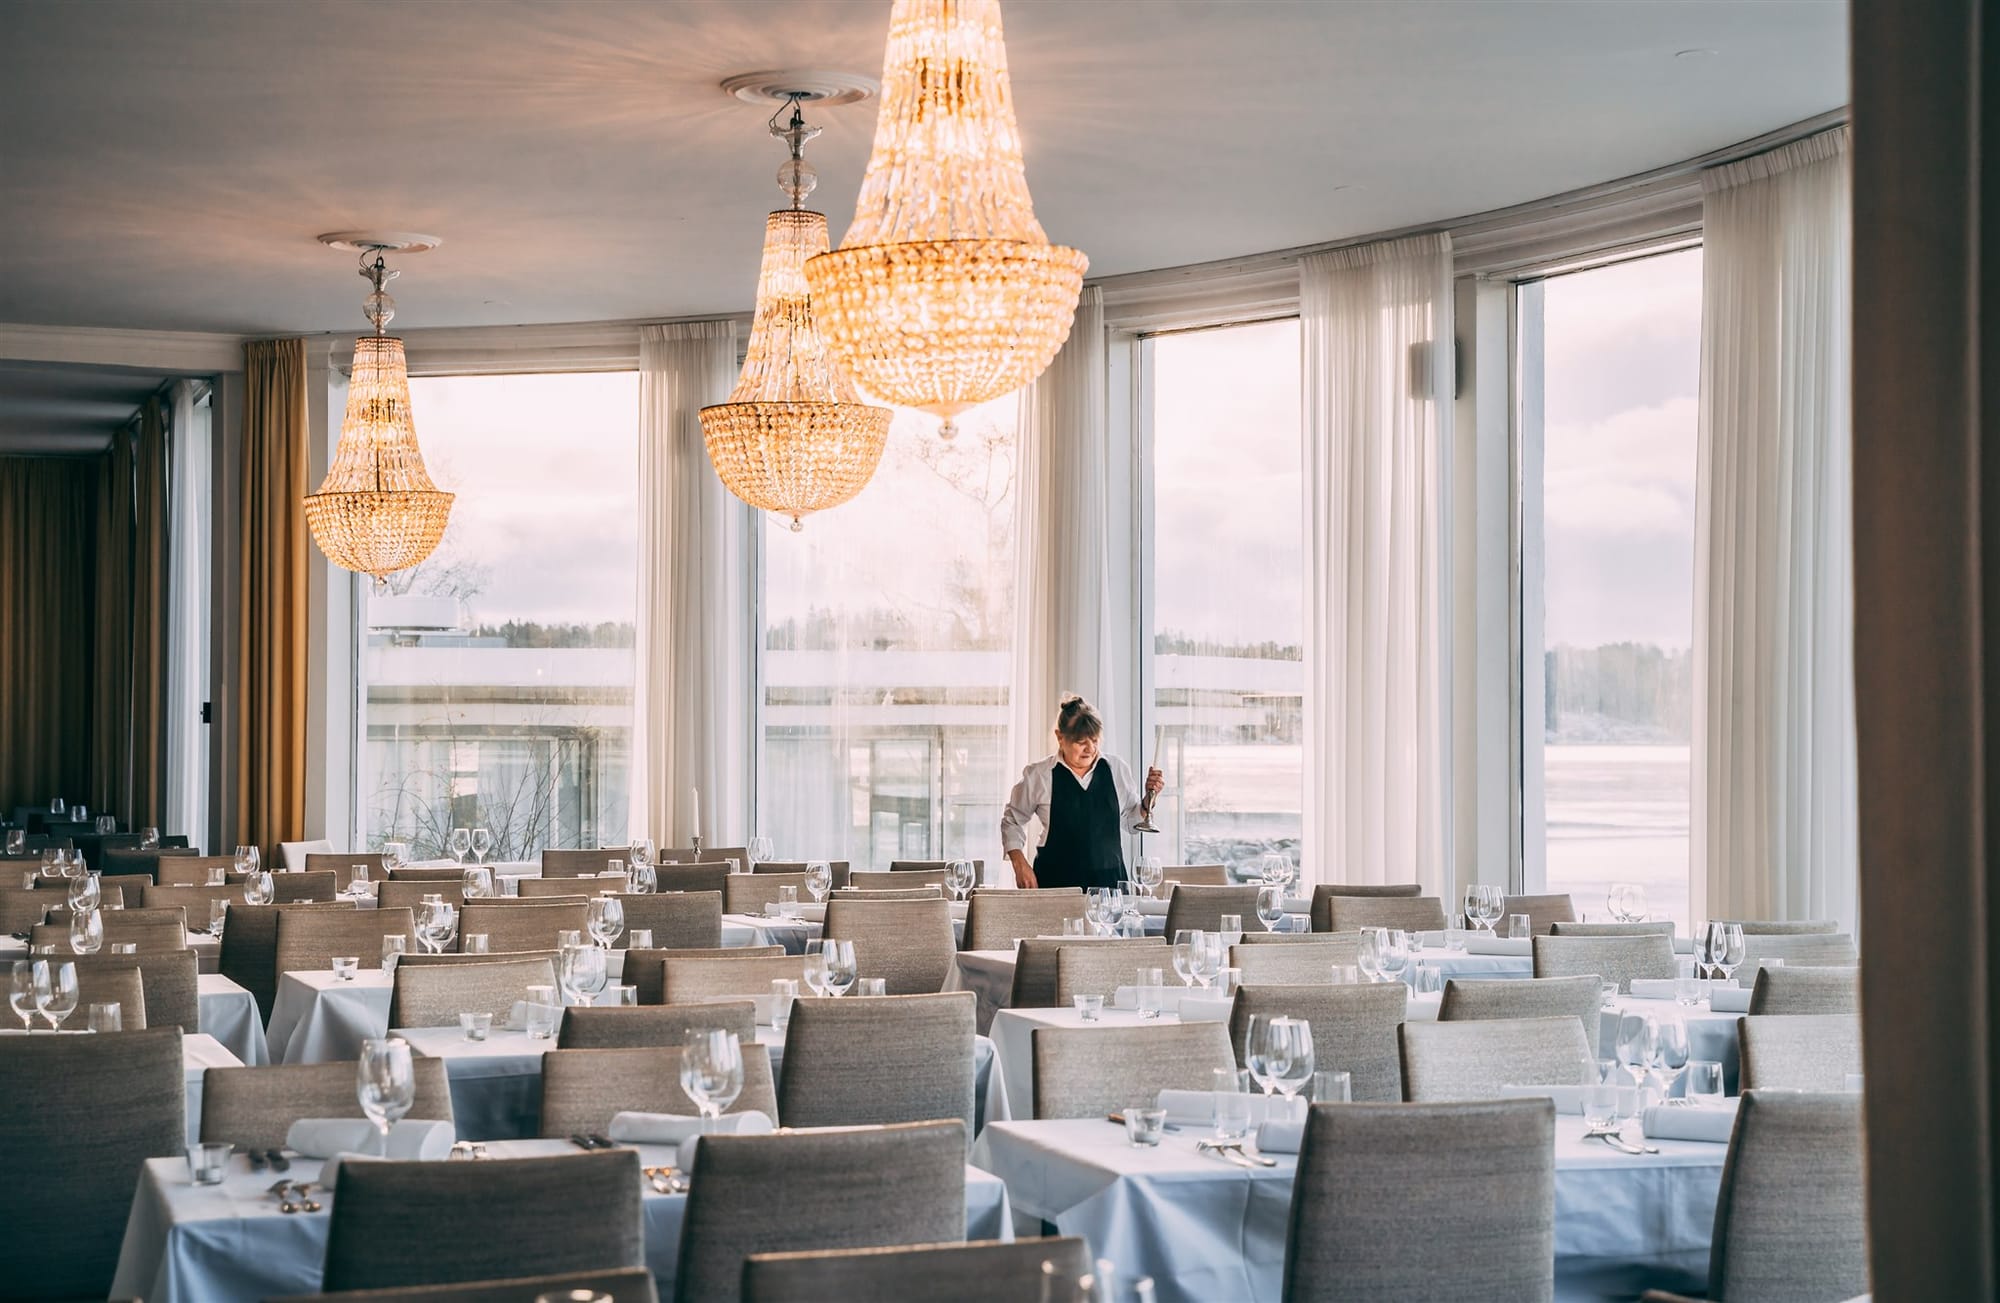 Kulosaaren Casinon Merisalin pöydät katettuna, tilaa koristaa upeat kristallikruunut ja näkymät merelle - Venuu.fi